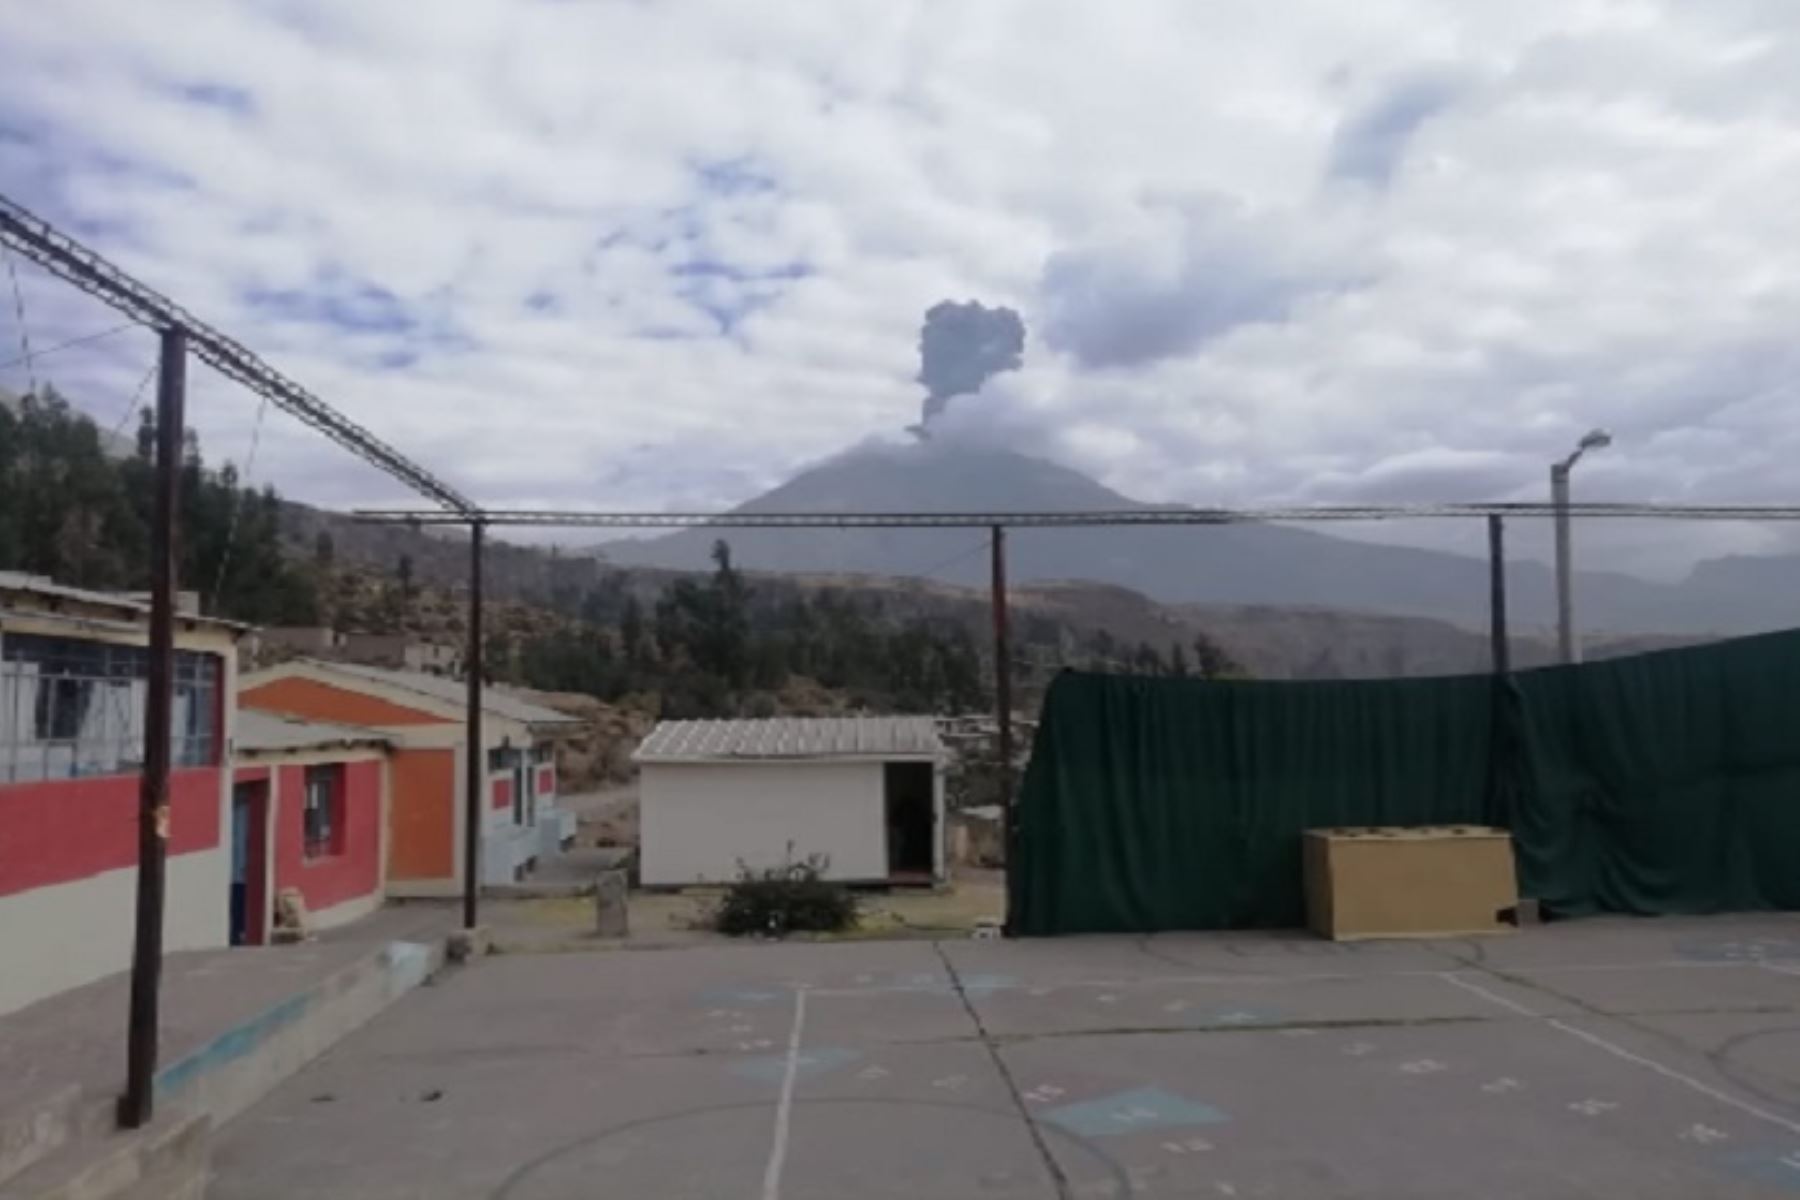 Ante las tres explosiones que ha registrado en menos de 24 horas el volcán Ubinas, ubicado en Moquegua, el Instituto Geofísico del Perú (IGP) no descarta que puedan ocurrir nuevas explosiones y emisiones de ceniza; por ello recomienda mantener el nivel de alerta naranja en el macizo.